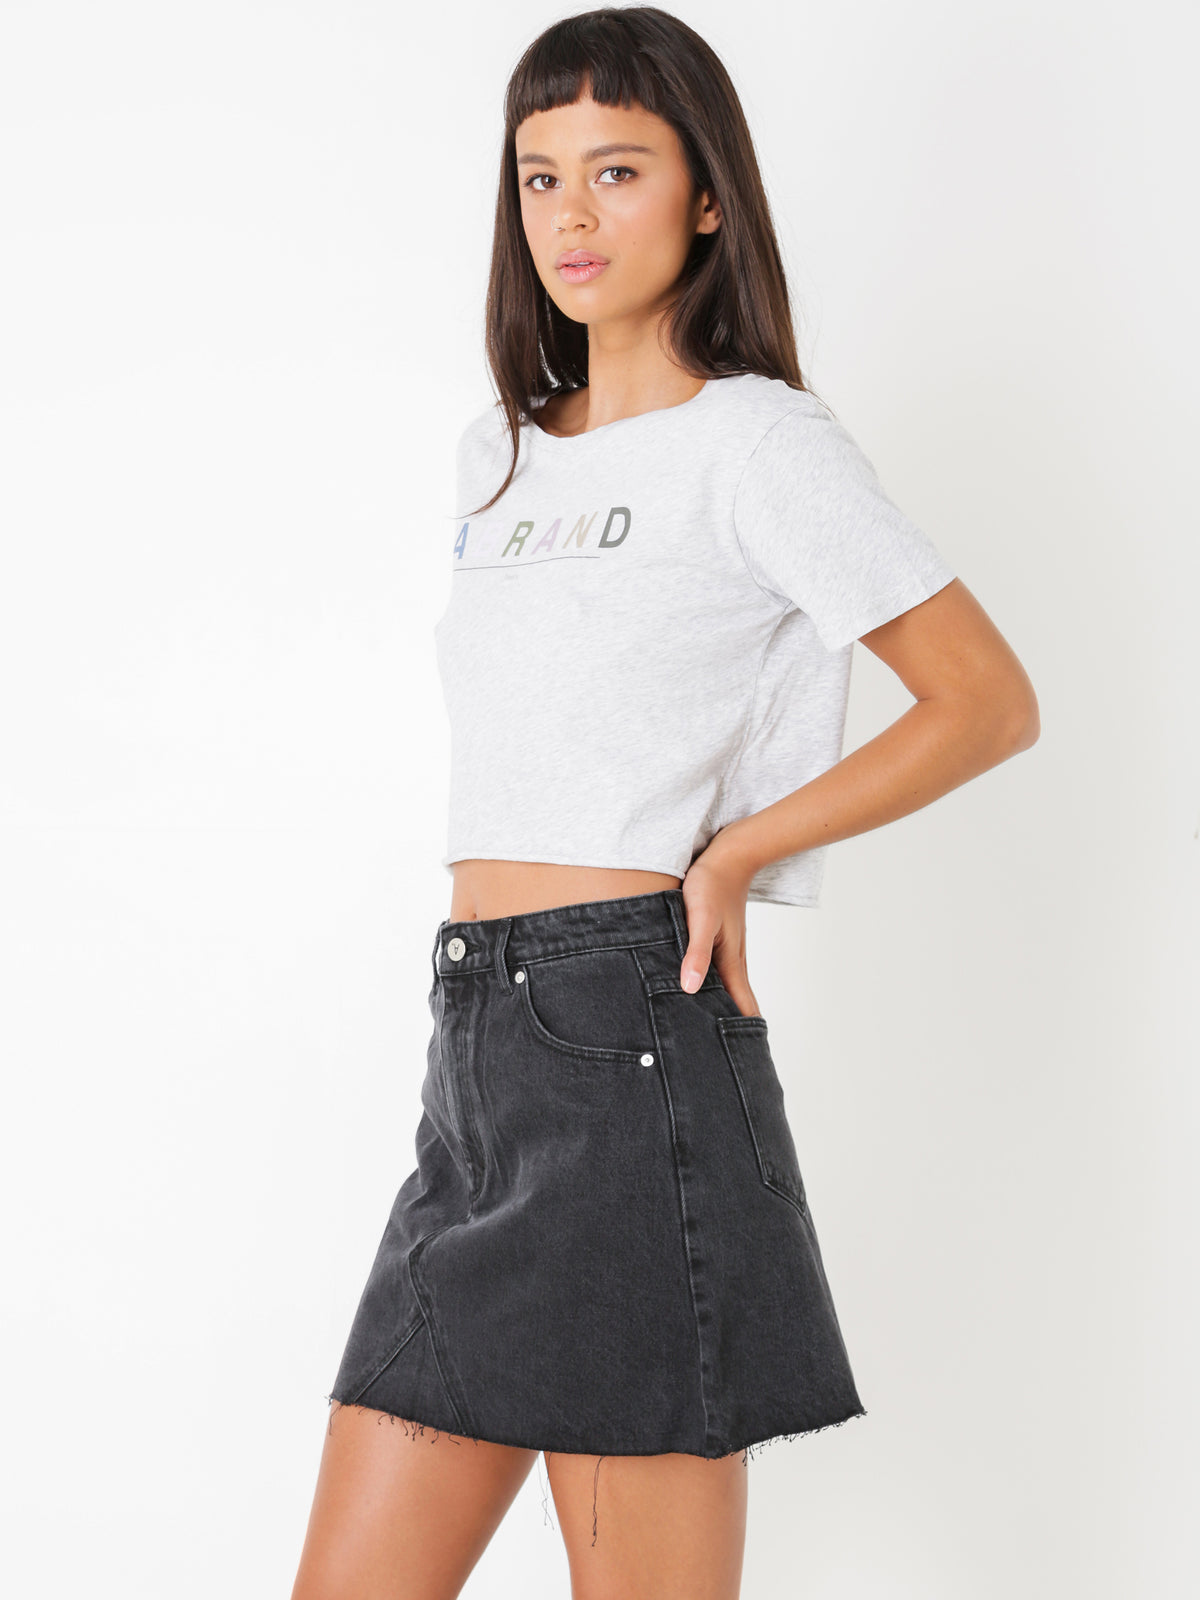 A Aline Skirt in Graphite Denim